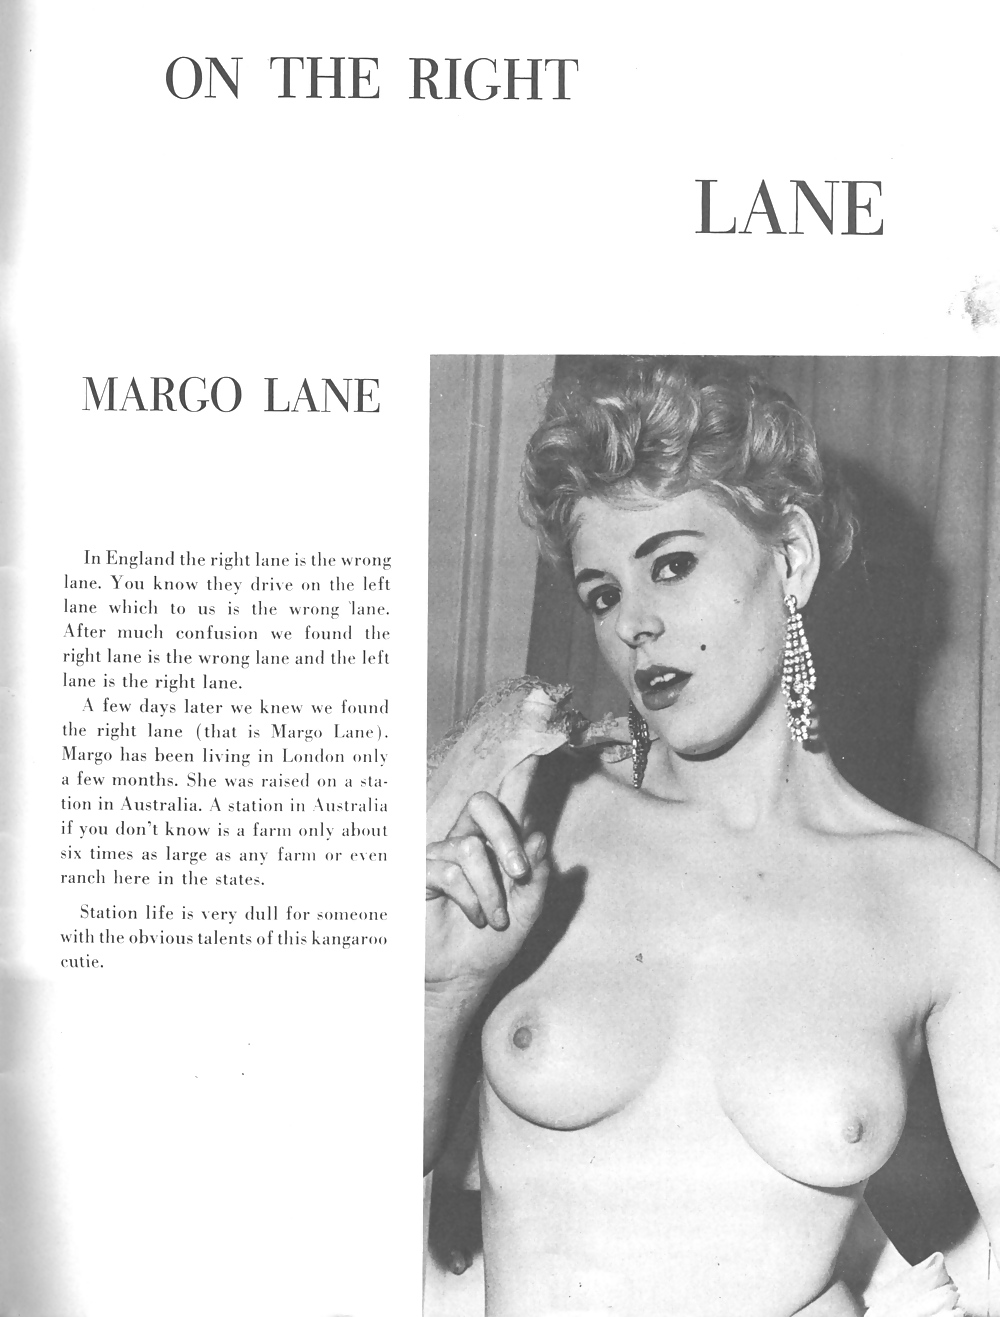 Vintage Magazines Magnifique Vol 01 No 01 - Early 1960s #1505359